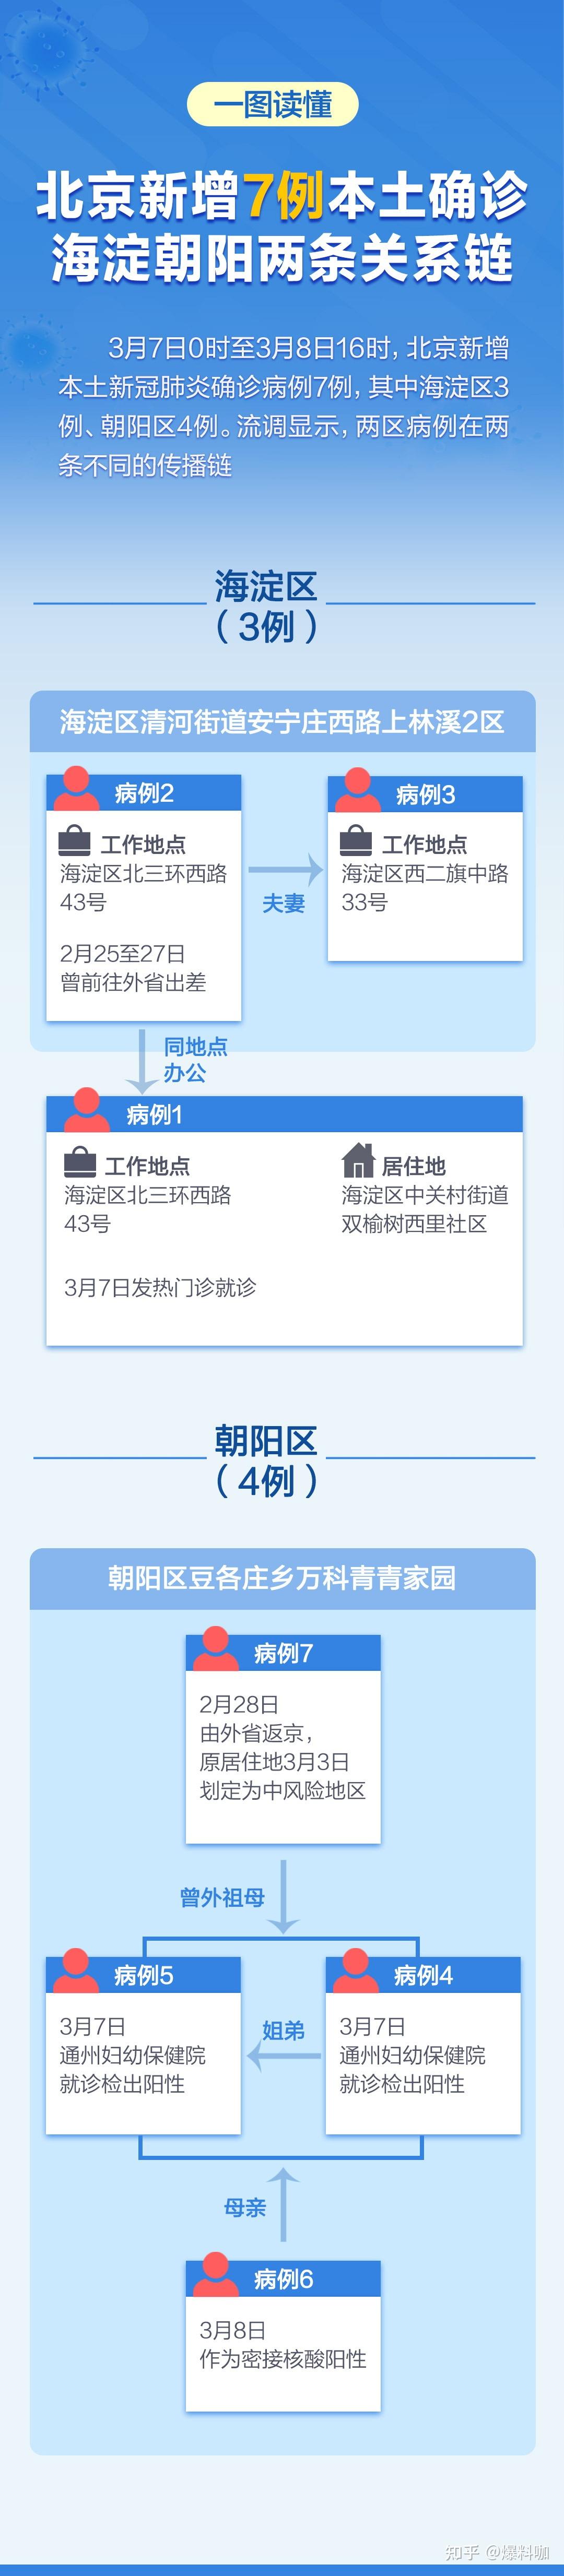 3 月 8 日北京新增本土确诊 6 例，目前情况如何？